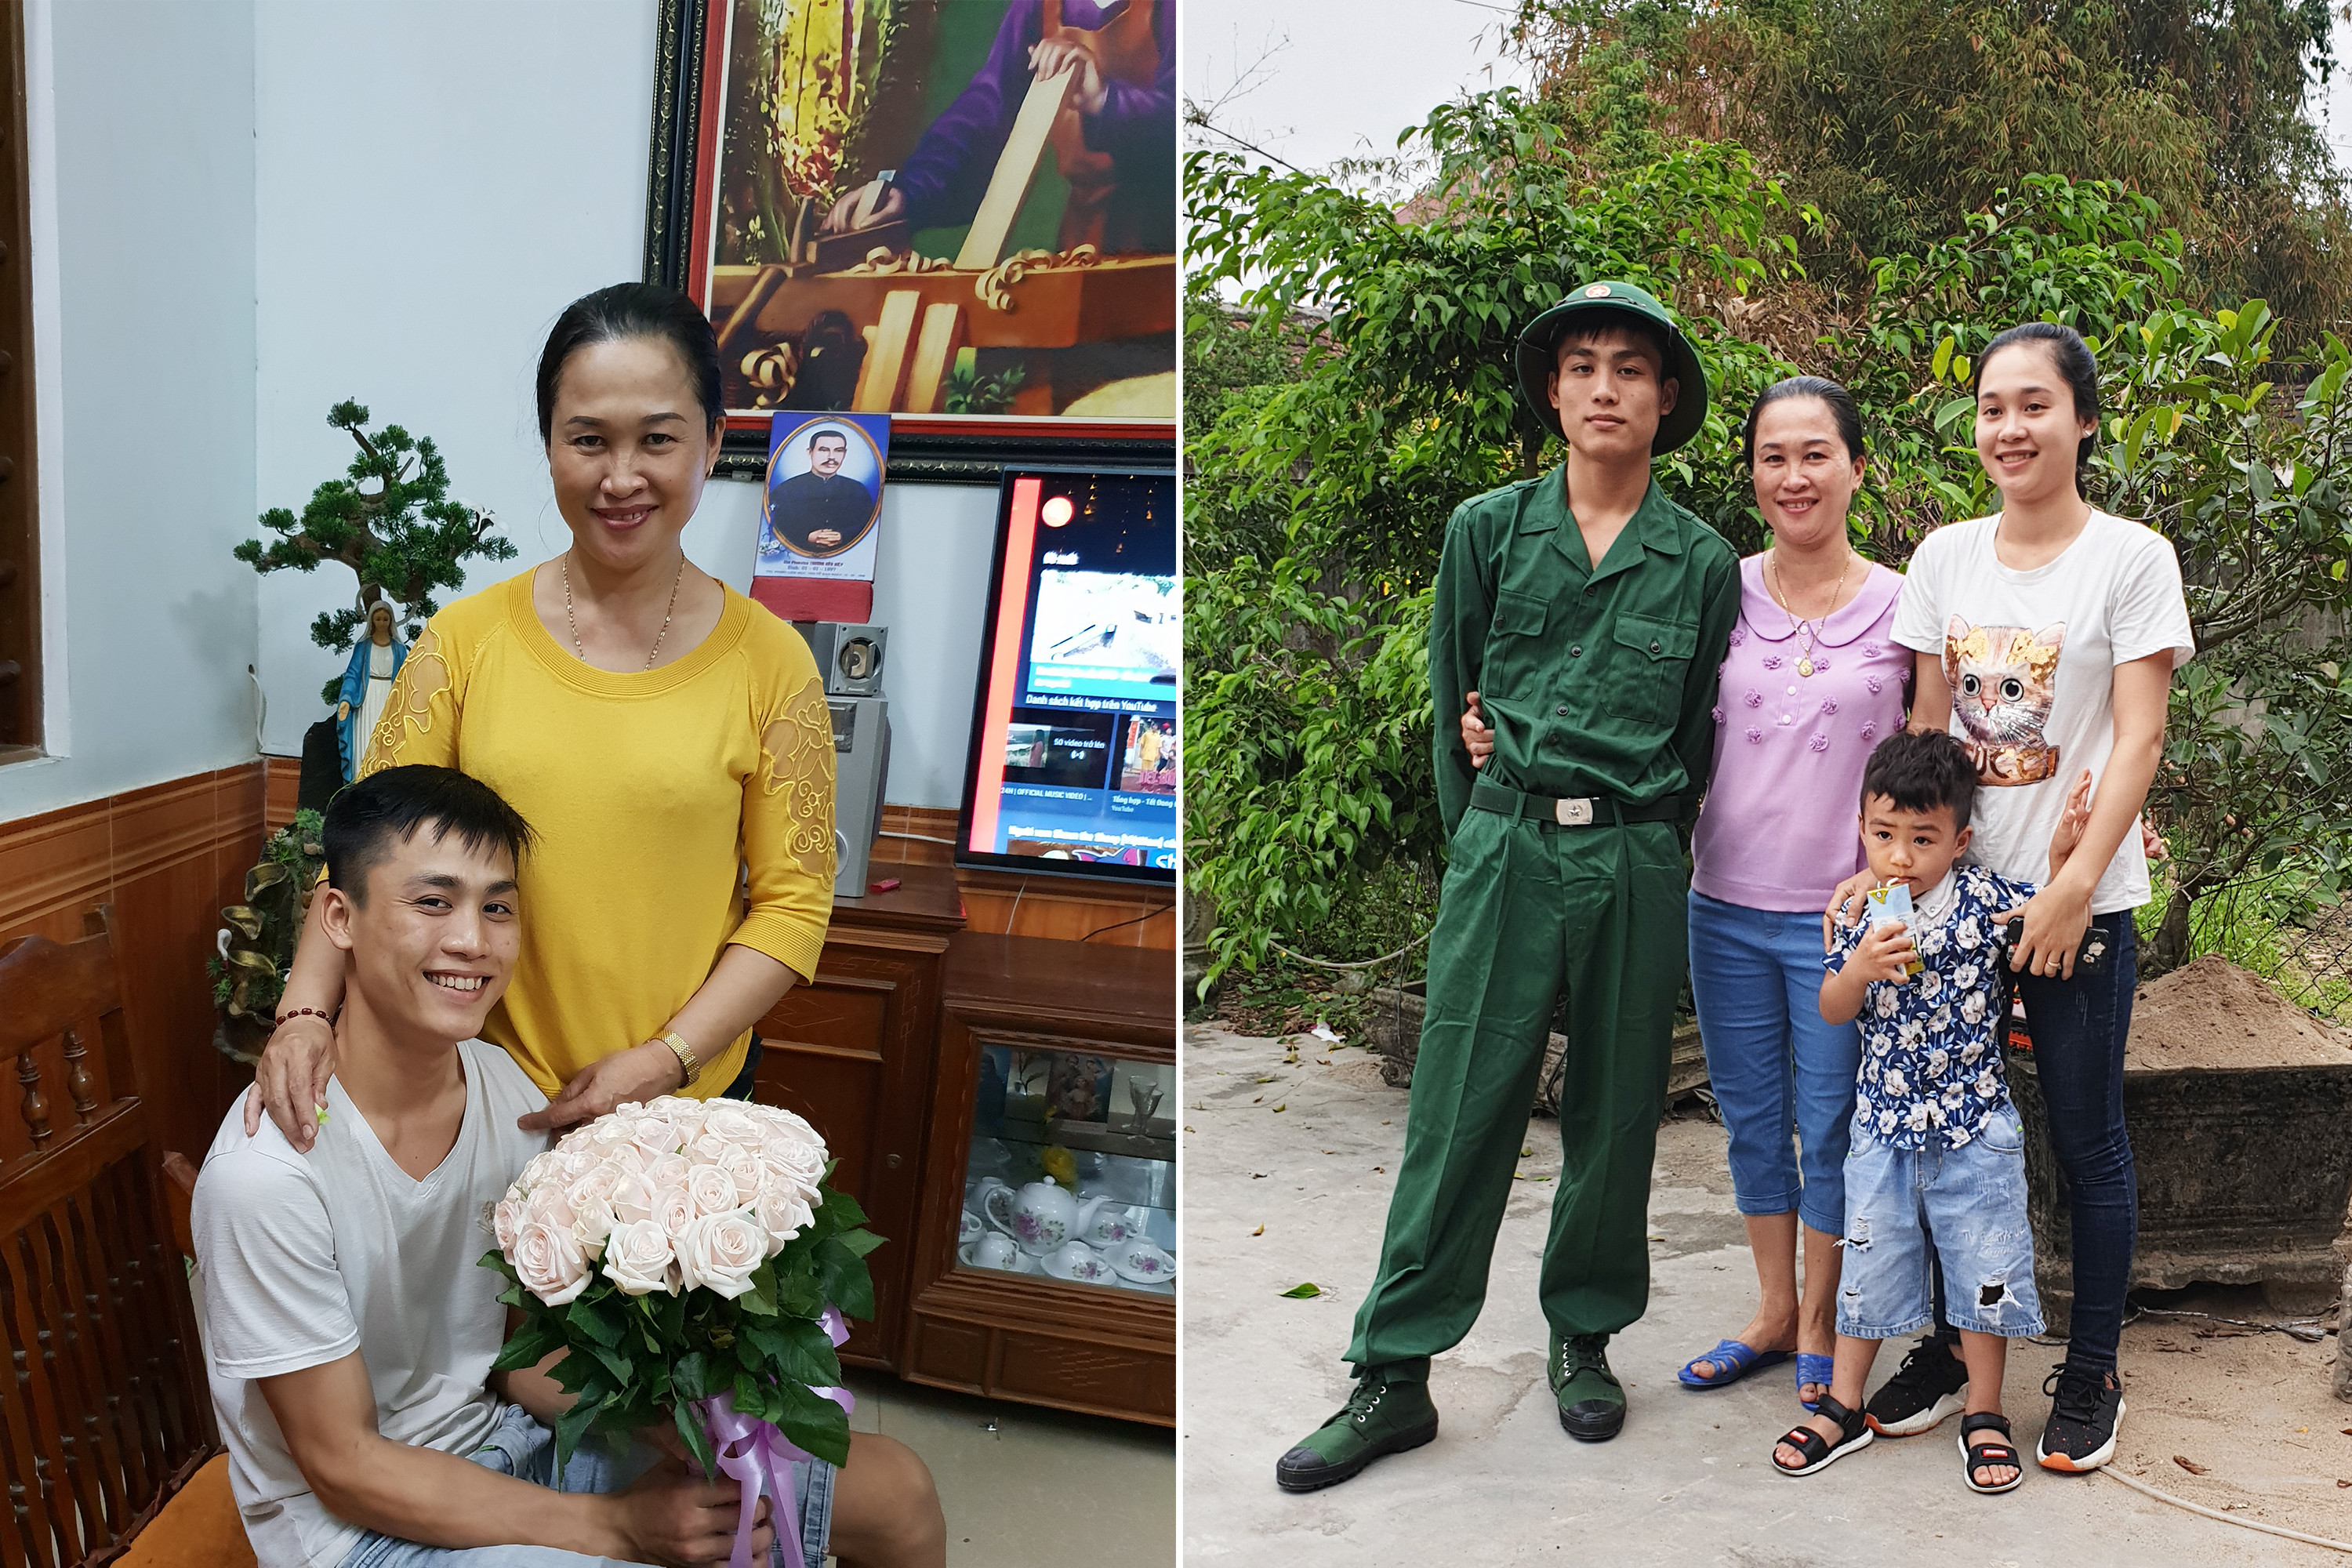 Nguyễn Anh Duy tặng hoa cho mẹ nhân sinh nhật; Anh Duy cùng mẹ (giữa) và người thân trước giờ nhập ngũ. Ảnh: GĐCC